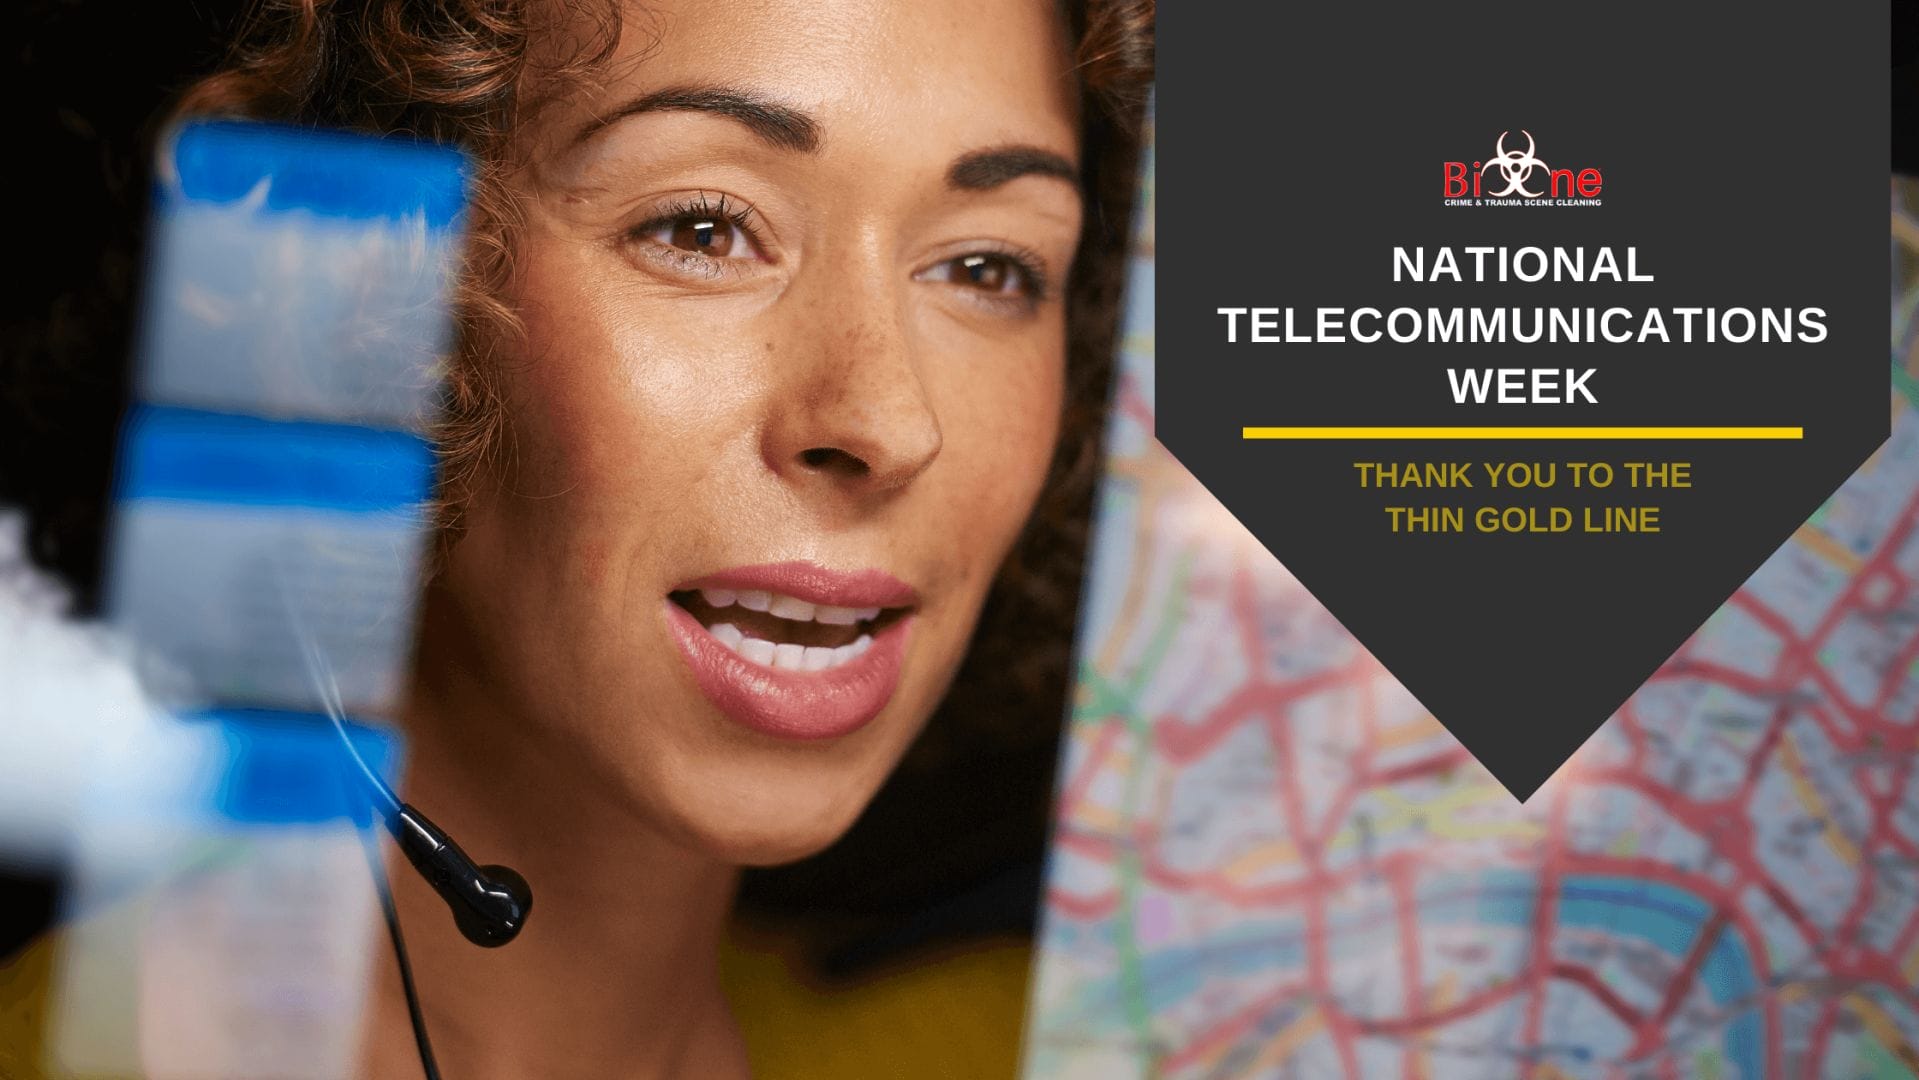 National Telecommunications Week